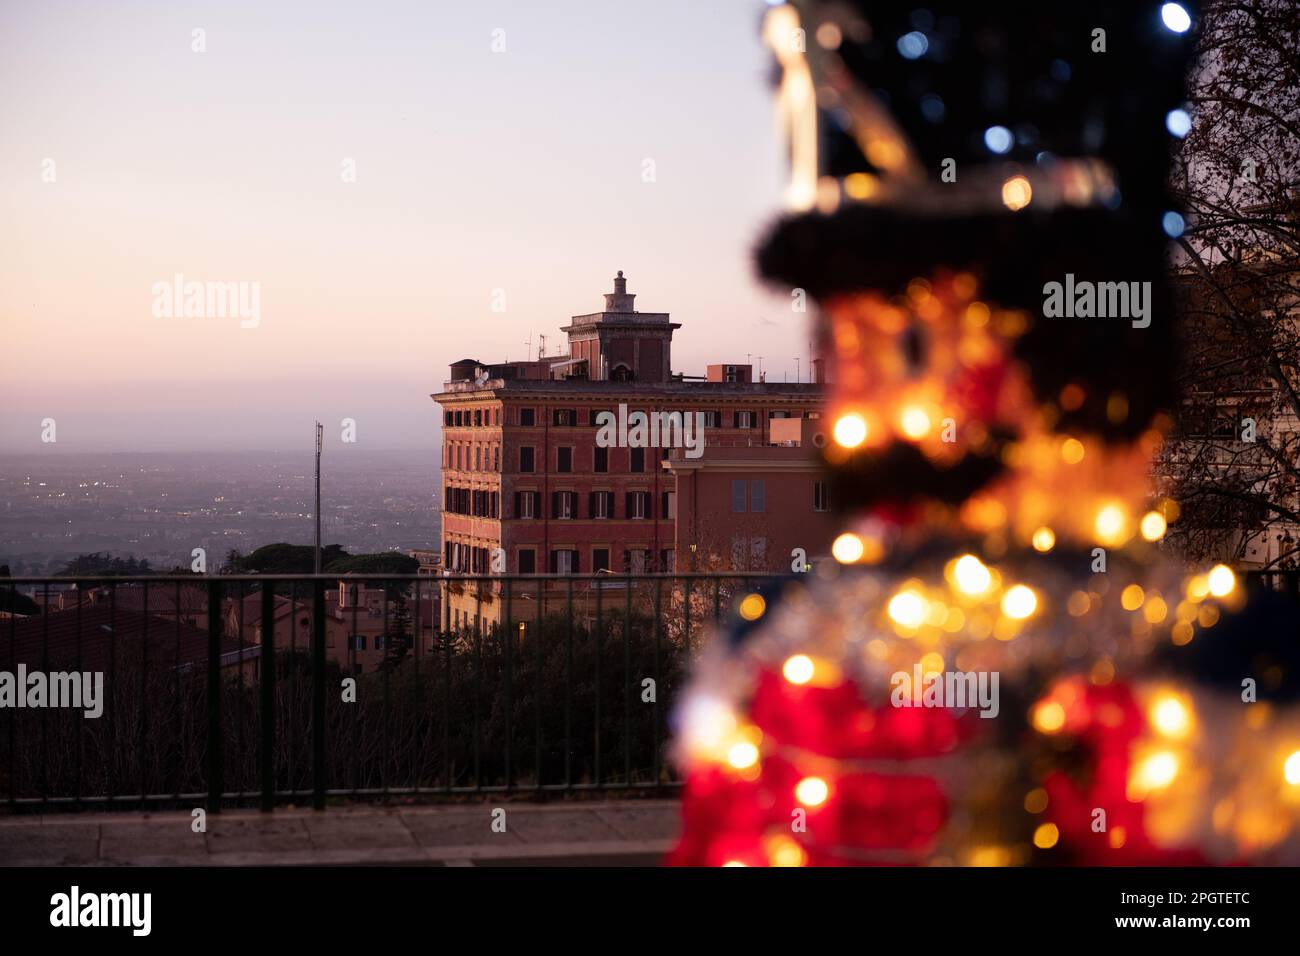 La decoración navideña brilla frente a la antigua casa romana y una amplia vista de Roma. Foto de stock